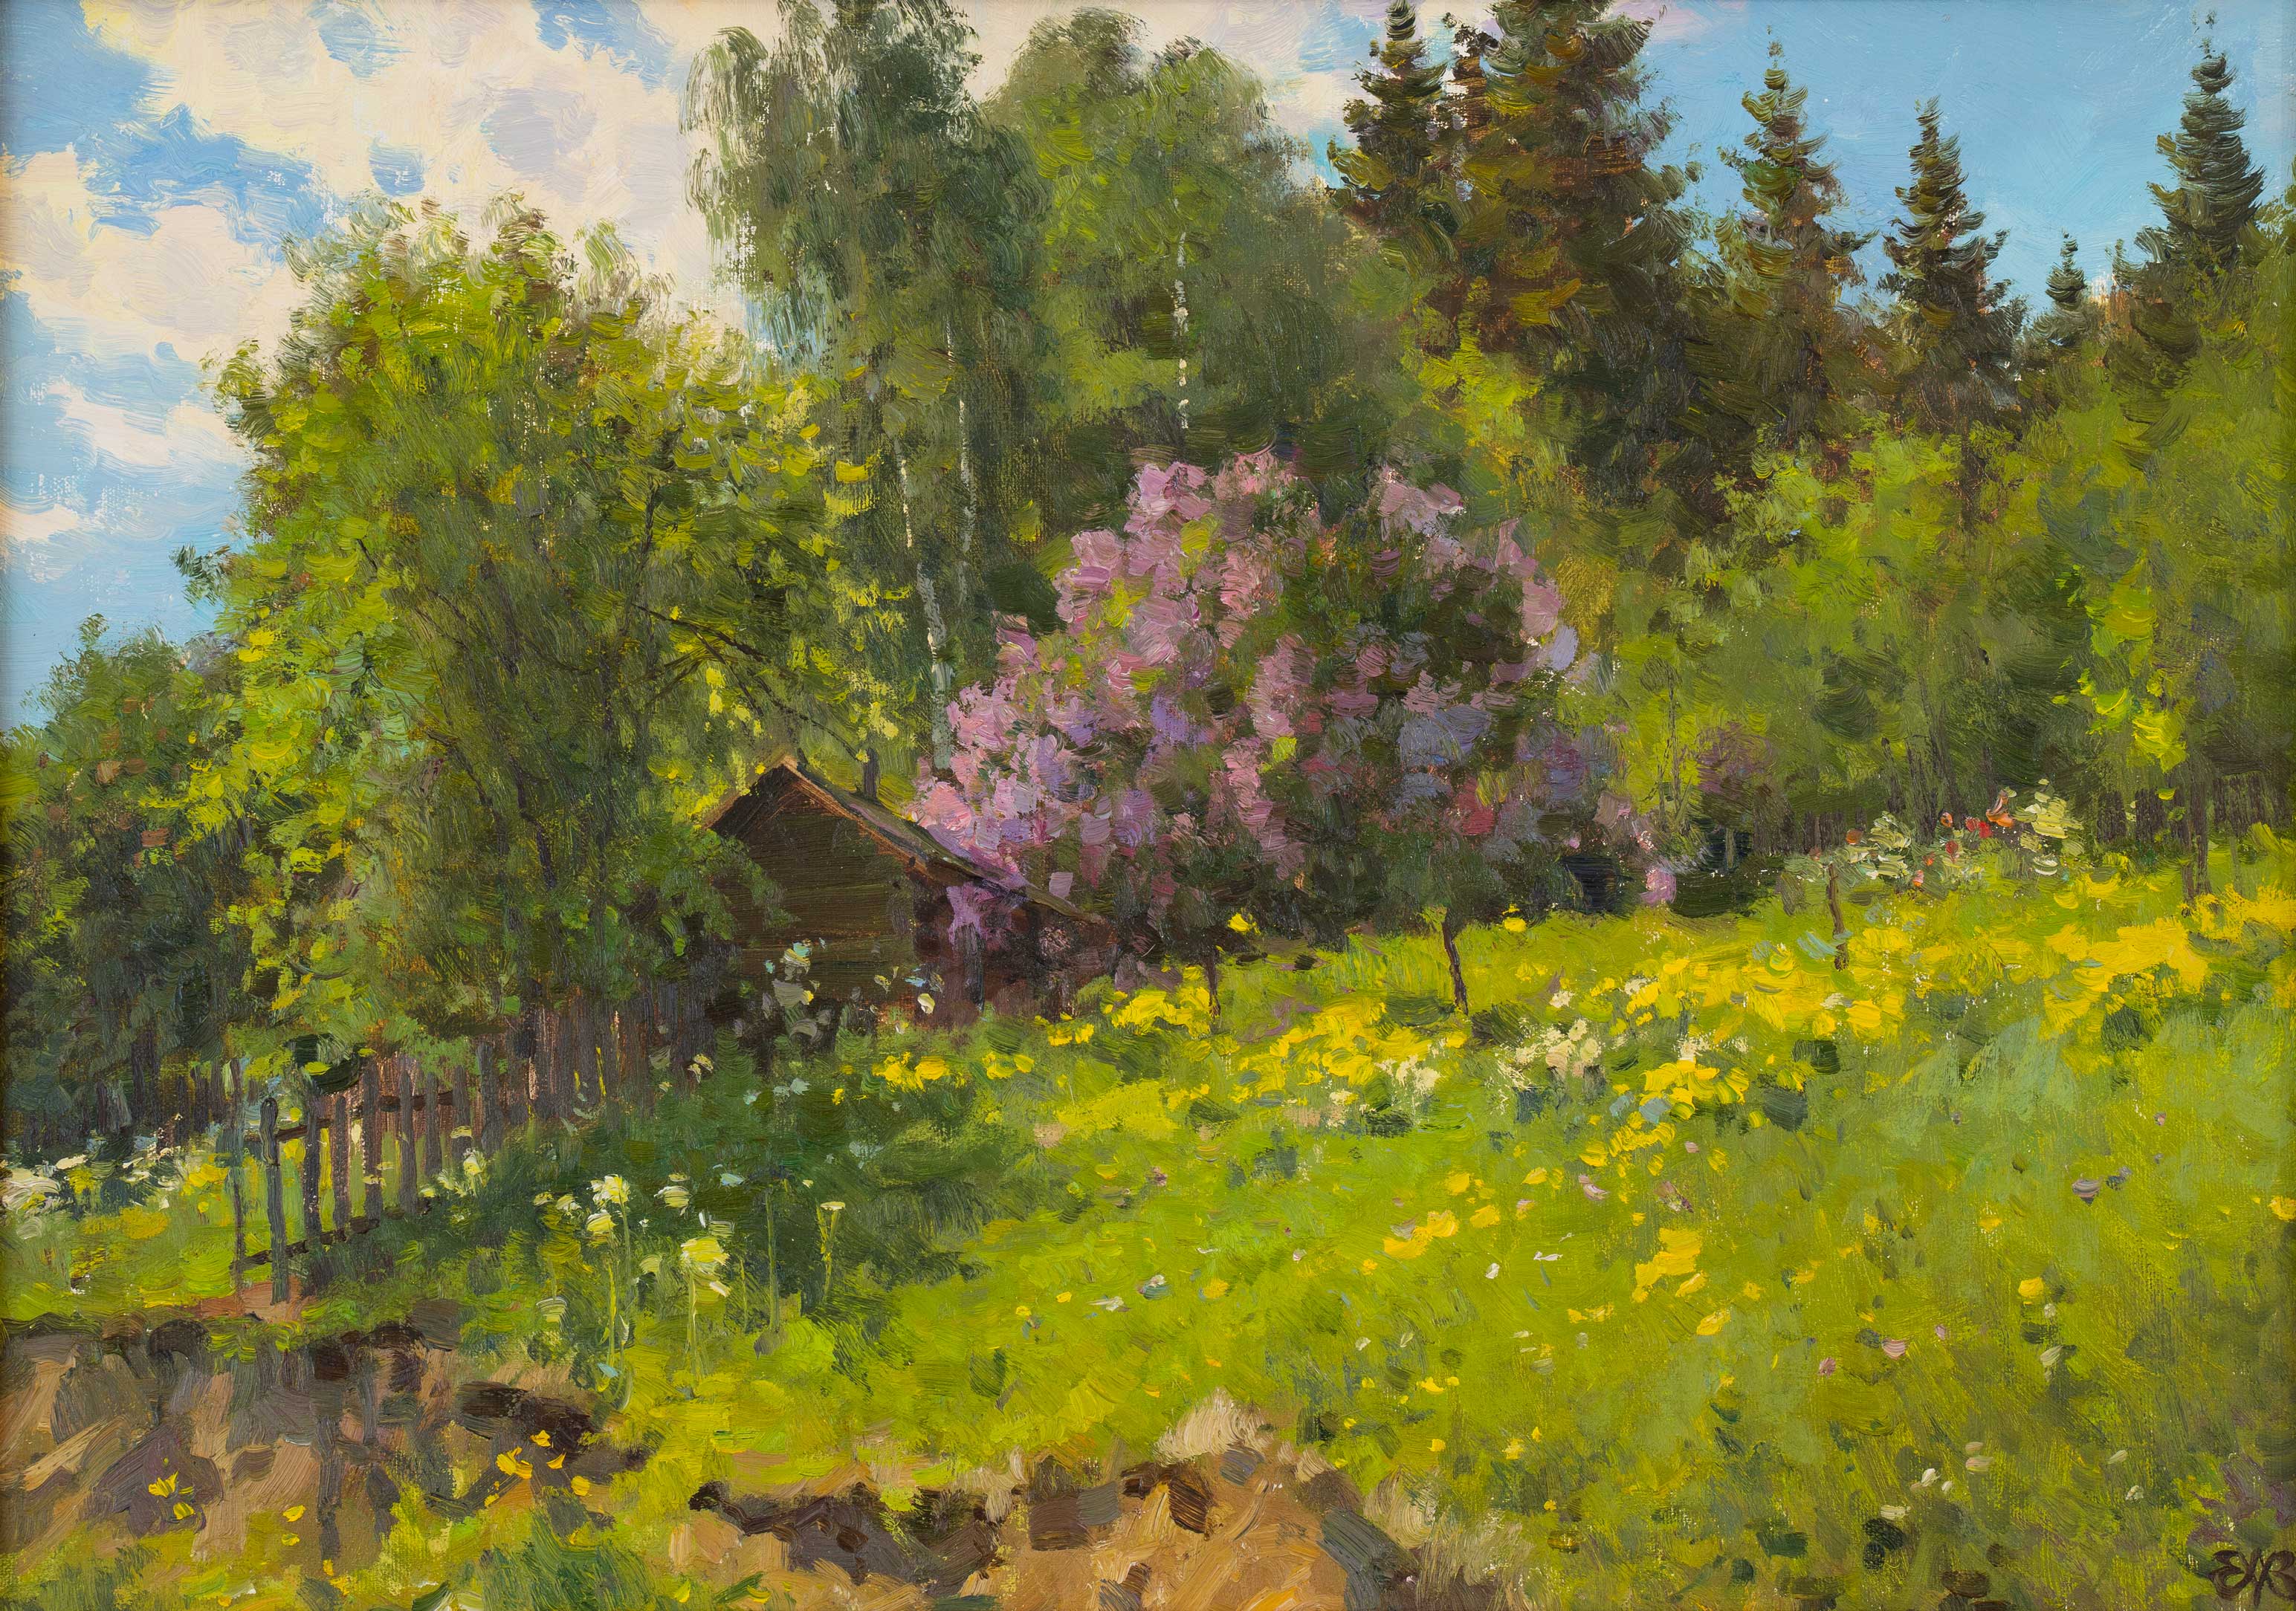 Hillside. Nizhniye Sergi - 1, Alexey Efremov, Buy the painting Oil